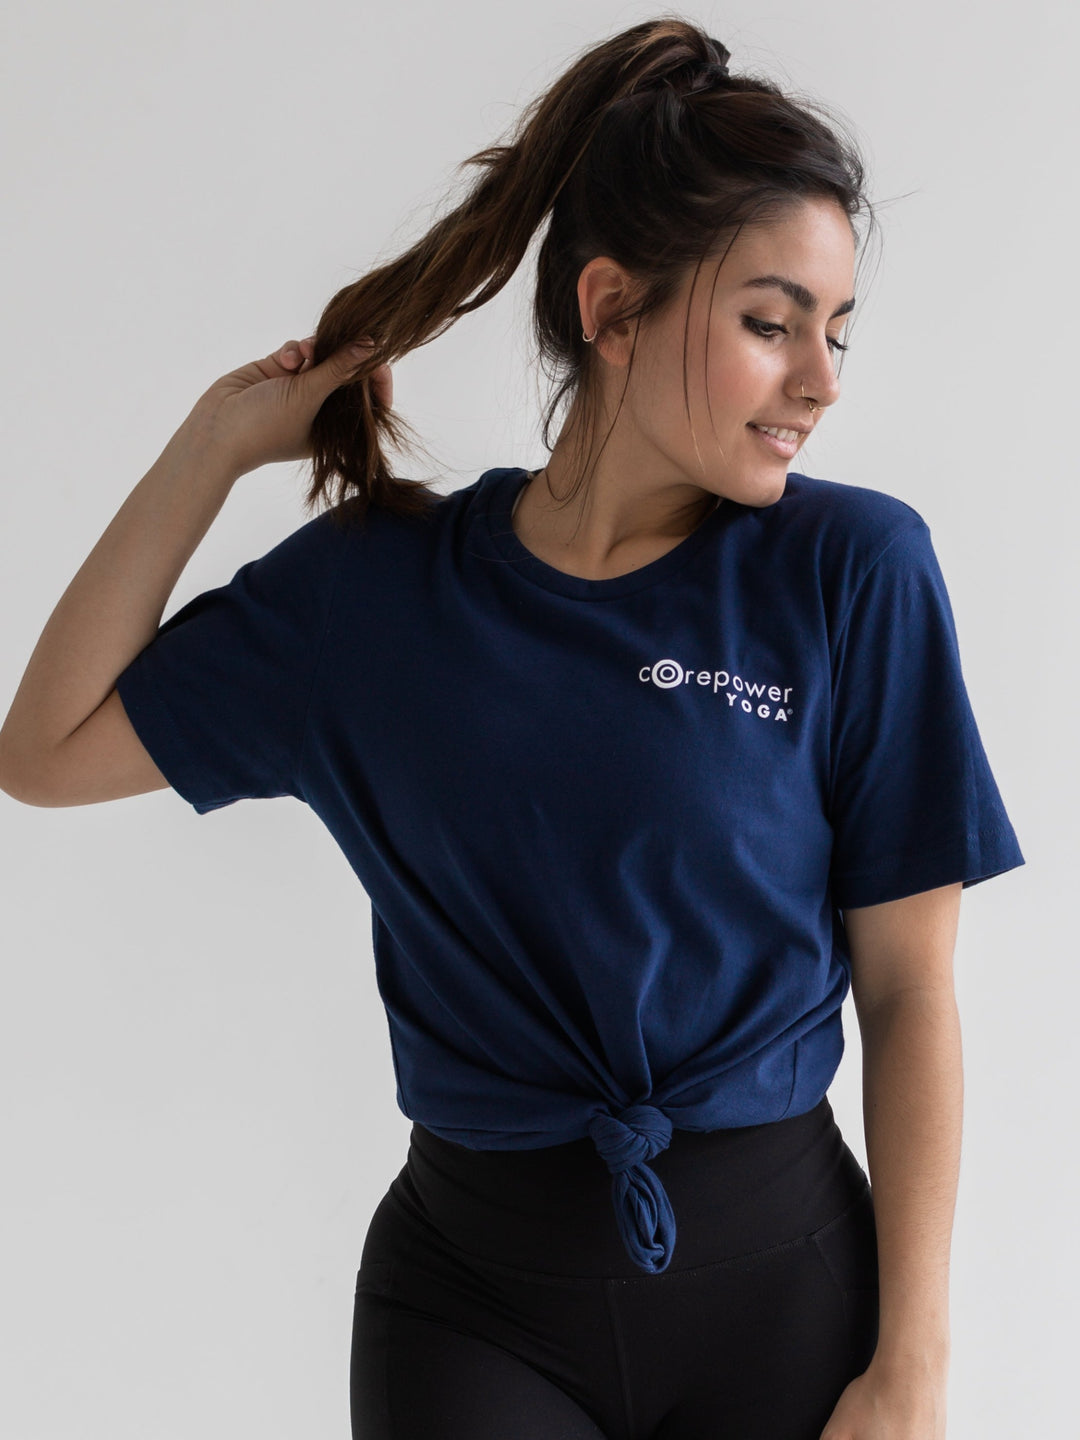 CorePower Yoga Unisex T-Shirt